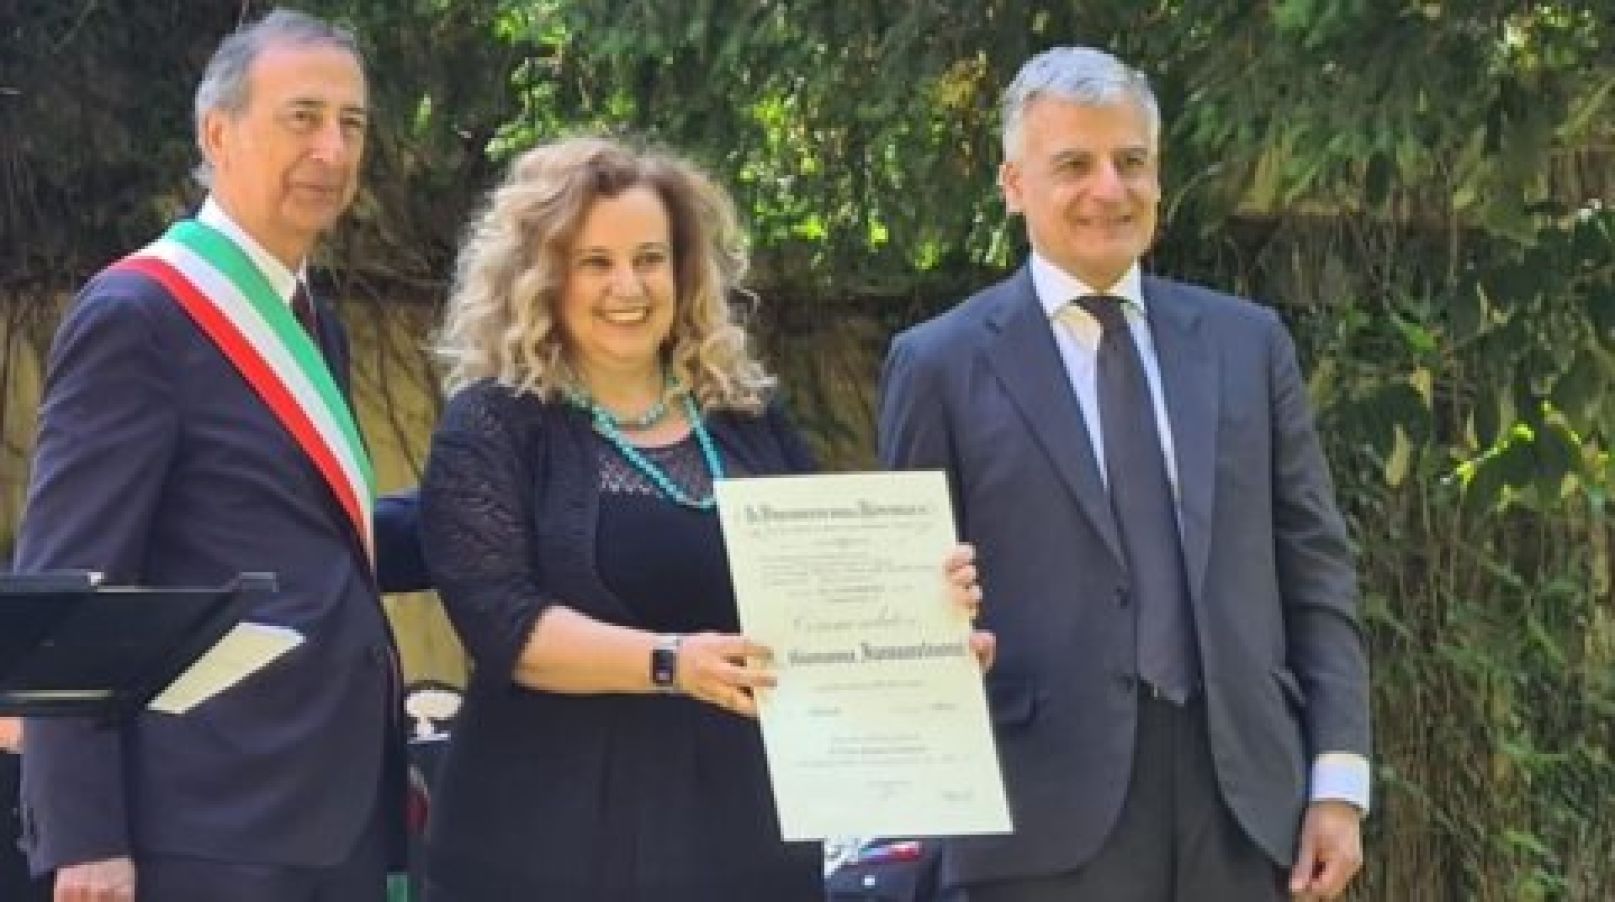 Giovanna Iannantuoni awarded the title of Commendatore dell’Ordine ‘al Merito della Repubblica Italiana’ (Commander of the Order of Merit of the Italian Republic)